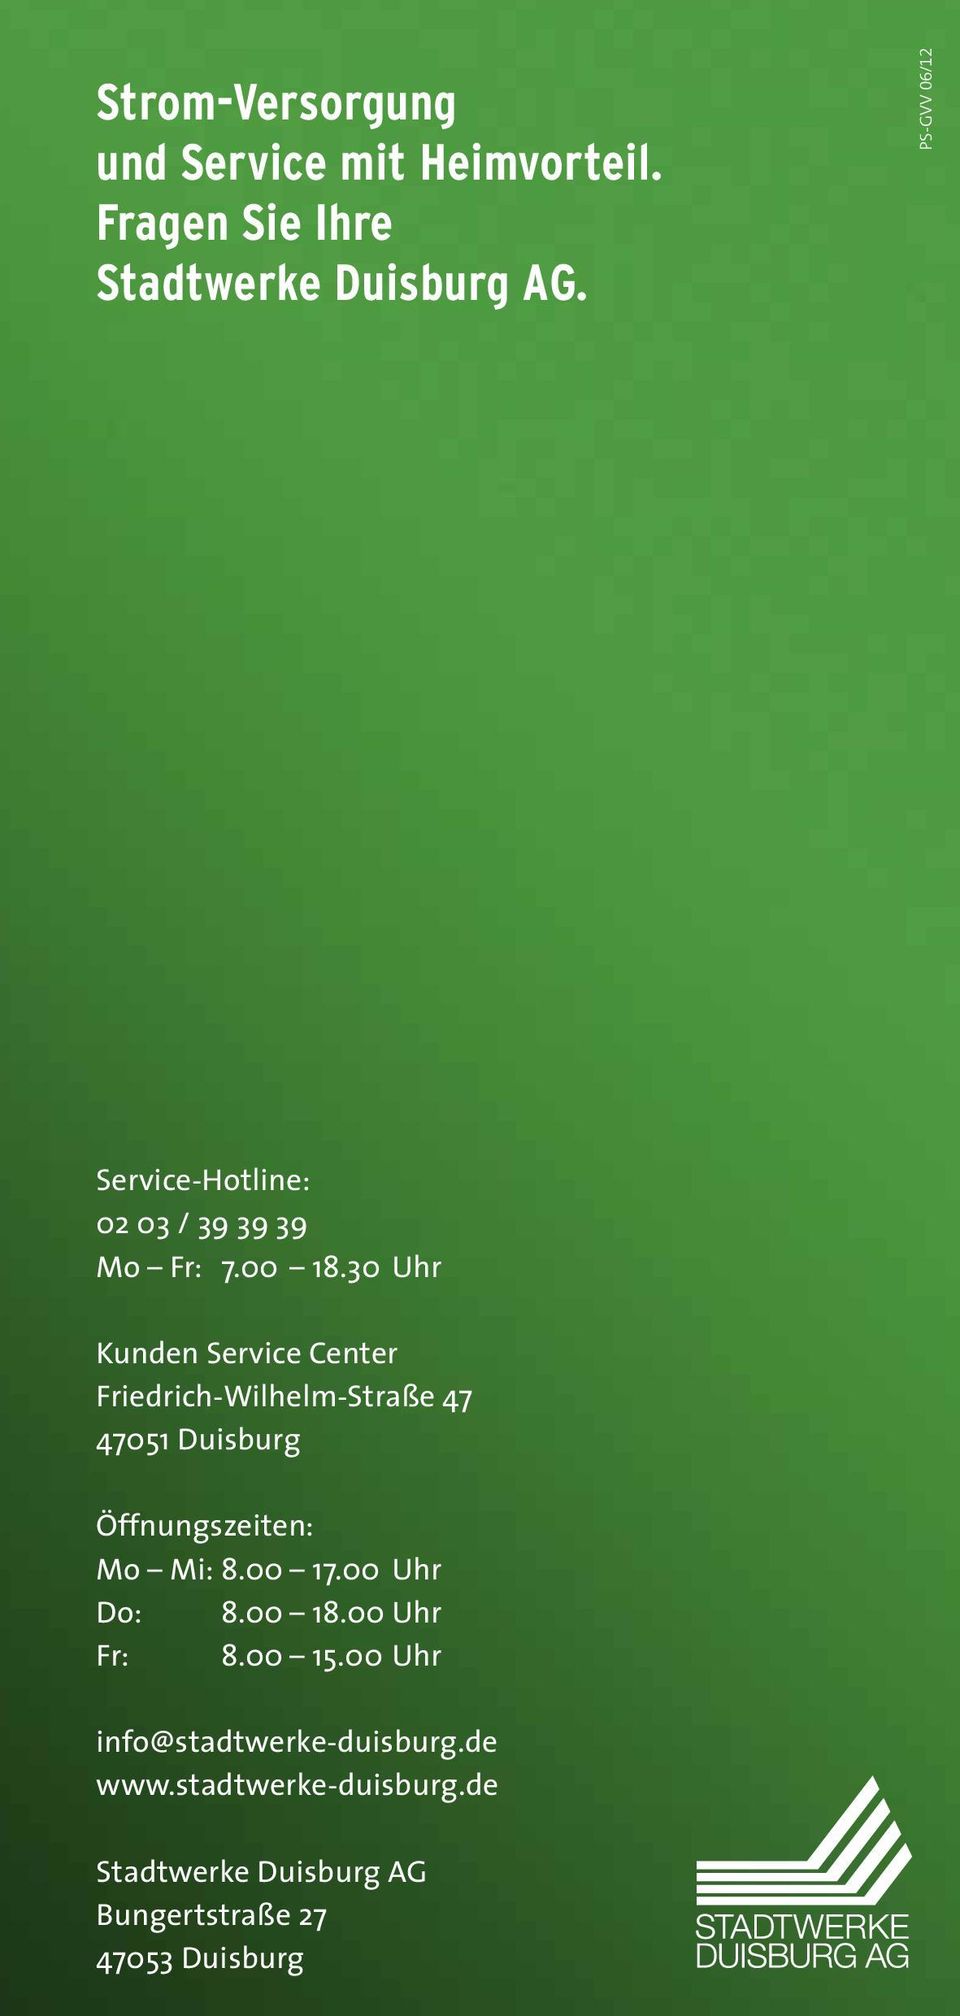 30 Uhr Kunden Service Center Friedrich-Wilhelm-Straße 47 47051 Duisburg Öffnungszeiten: Mo Mi: 8.